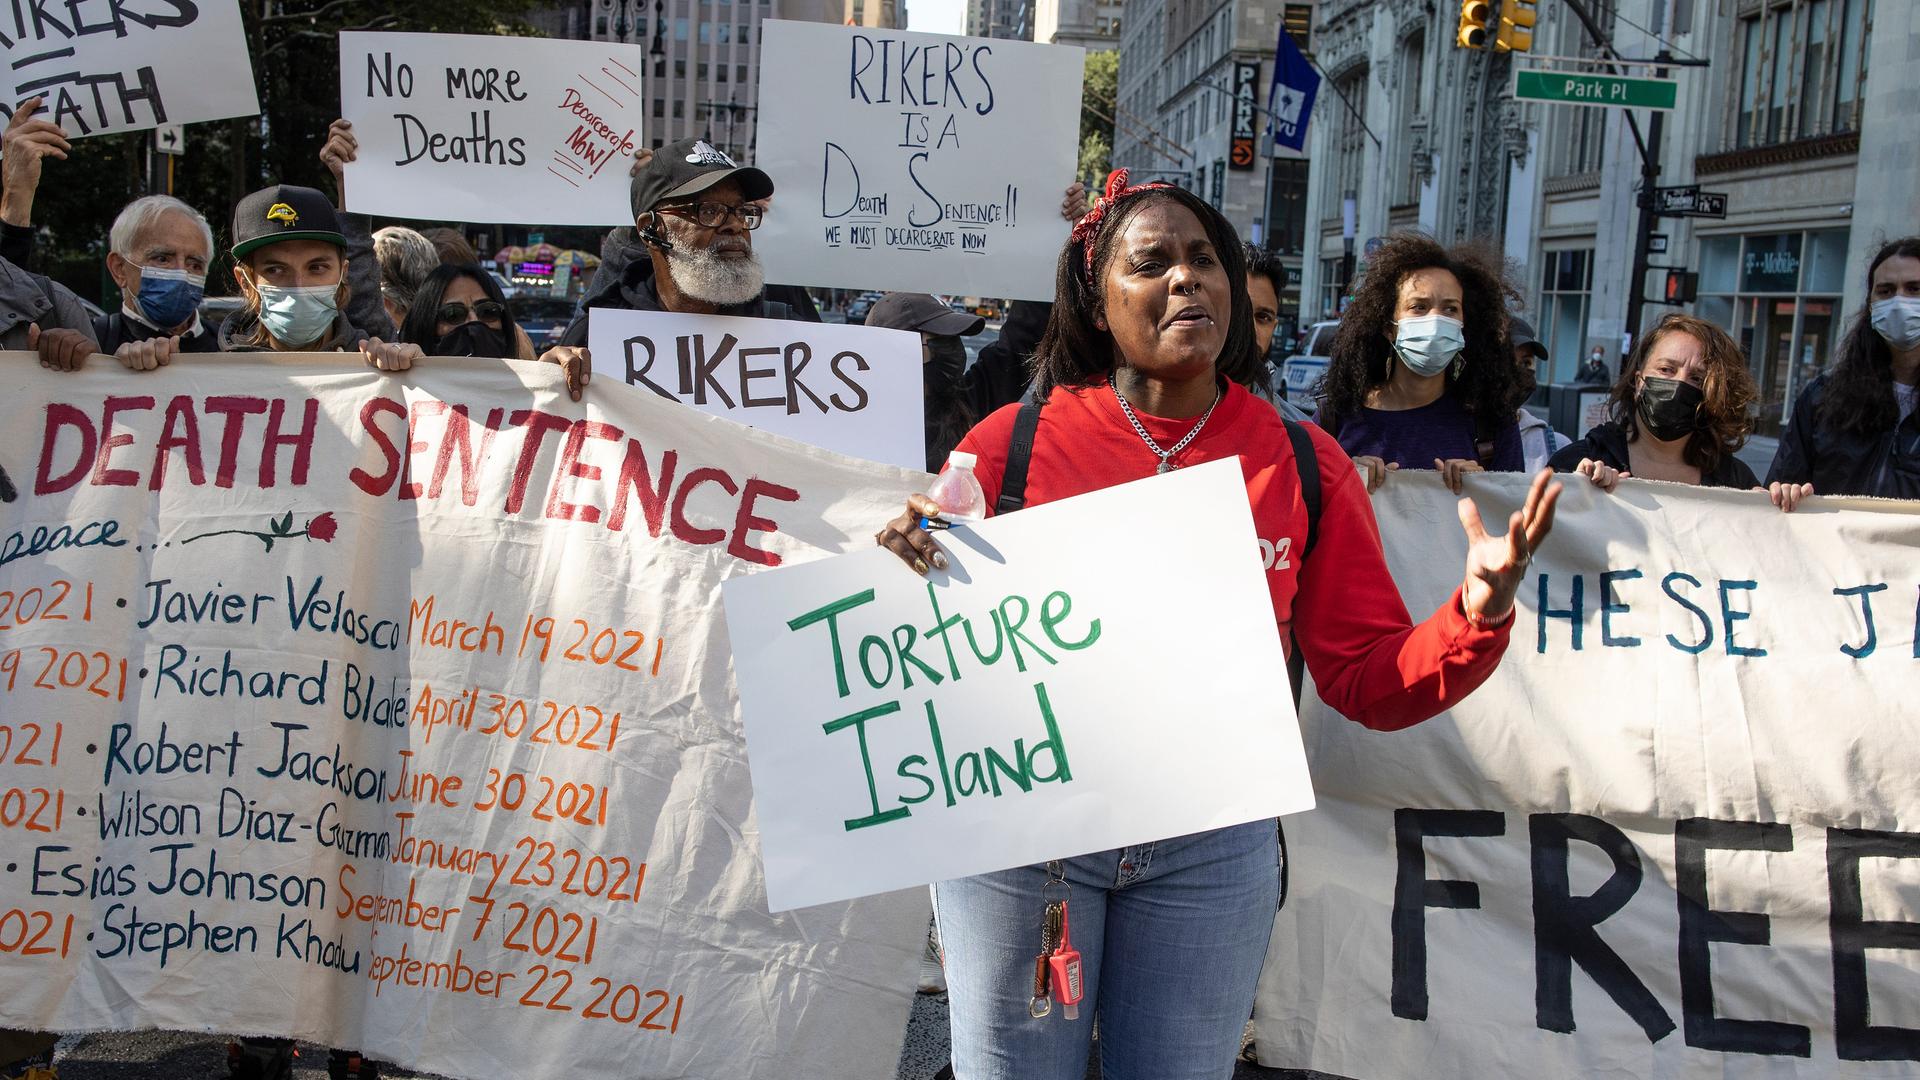 "Torture Island" steht auf einem Schild bei einem Protest in NYC vor der City Hall in Manhattan, weil im Rikers Island Gefängnis Familienangehörige zu Tode kamen.